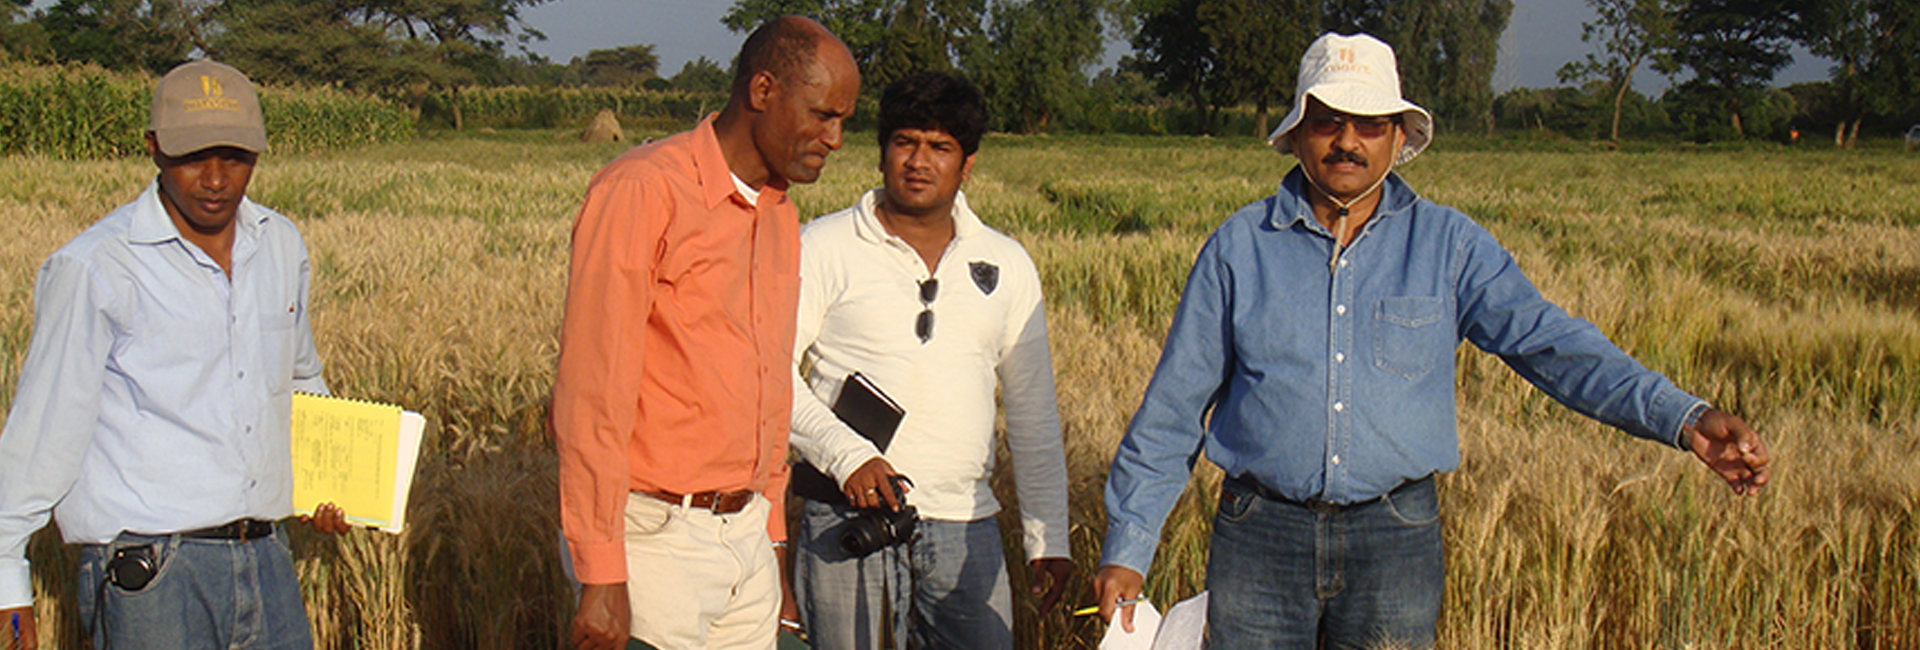 Победитель Праваси Бхаратия Самман, ученый доктор Рави Сингх работает над обеспечением продовольственной безопасности для всех.